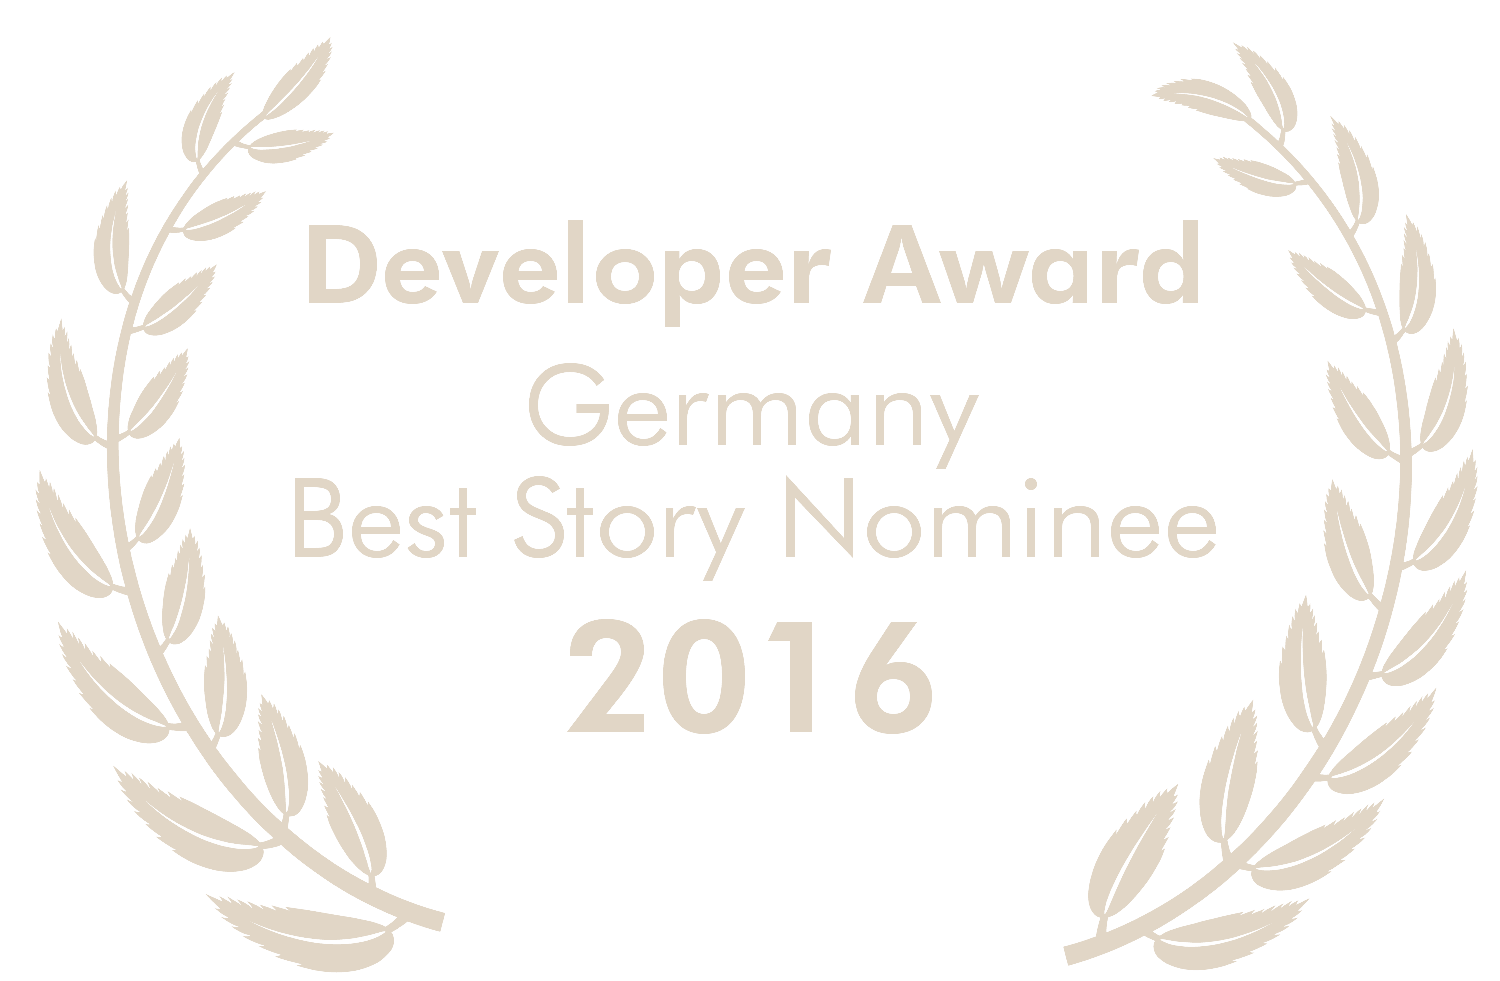 Nominated for Deutscher Entwicklerpreis - Best Story